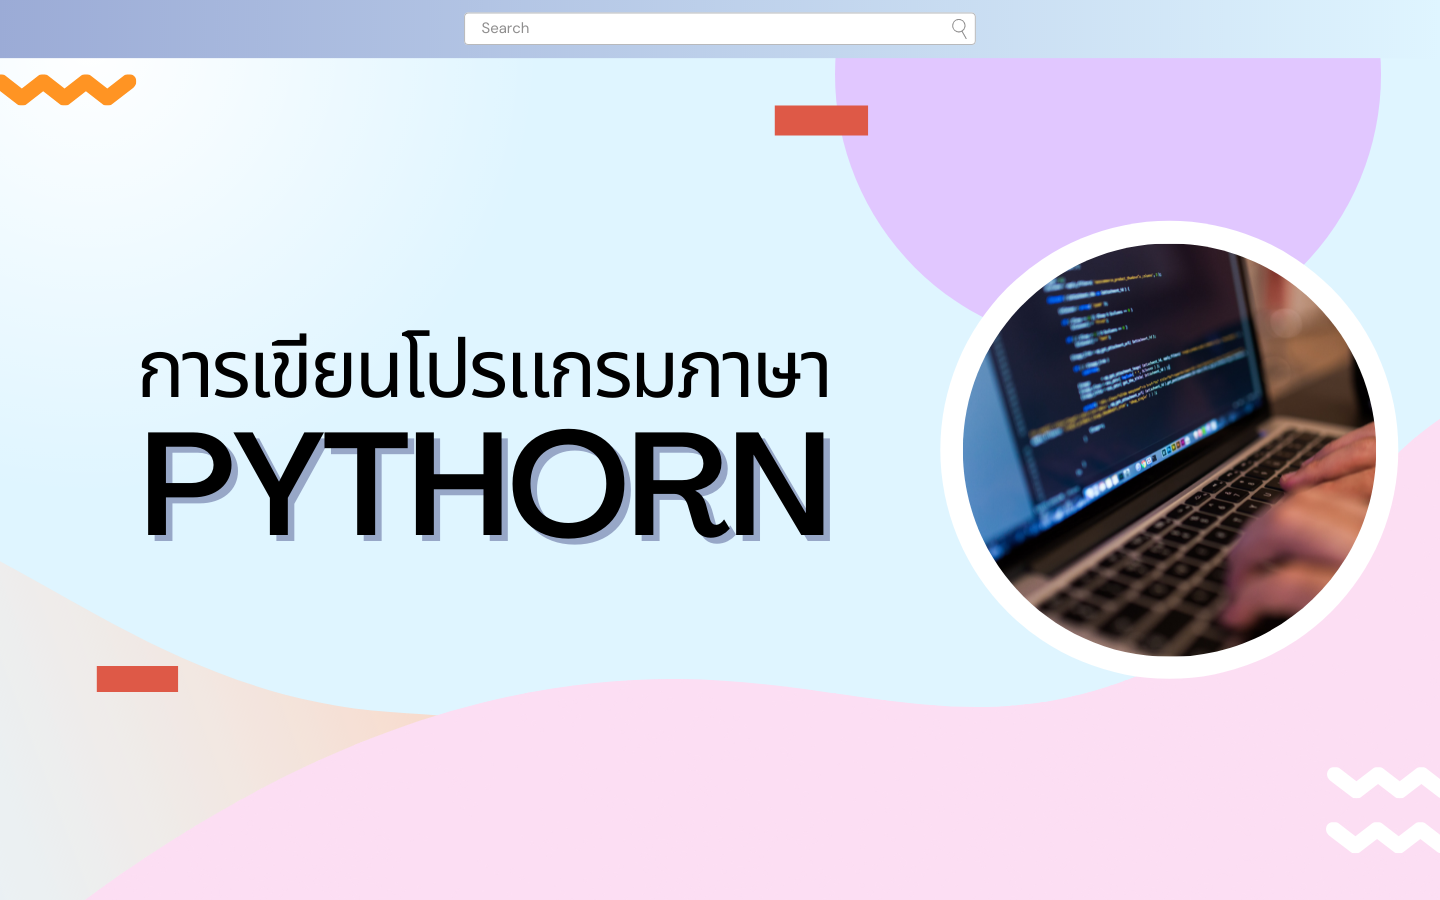 การเขียนโปรแกรมภาษา Pythorn